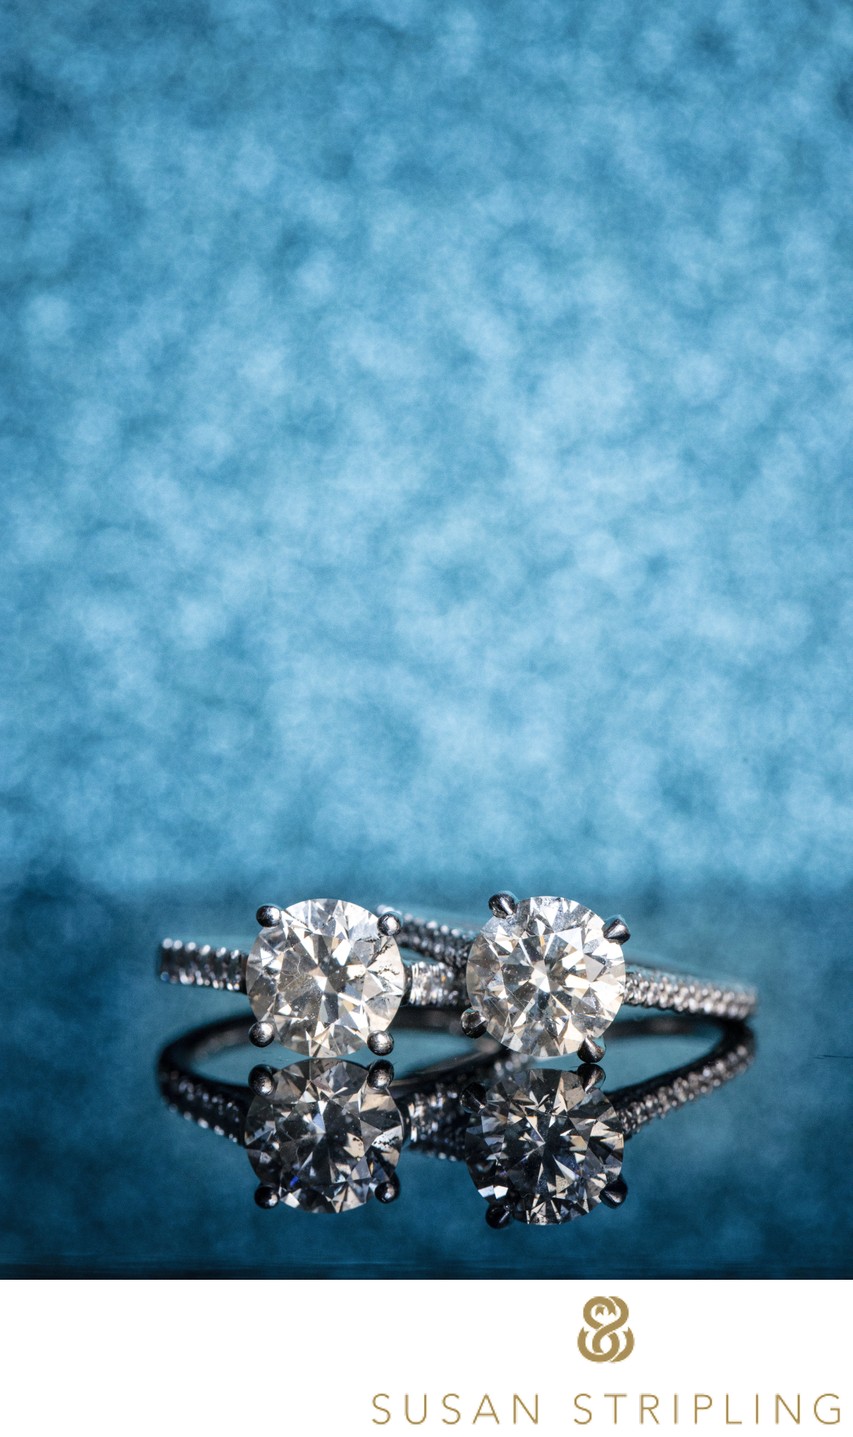 macro wedding photography of rings